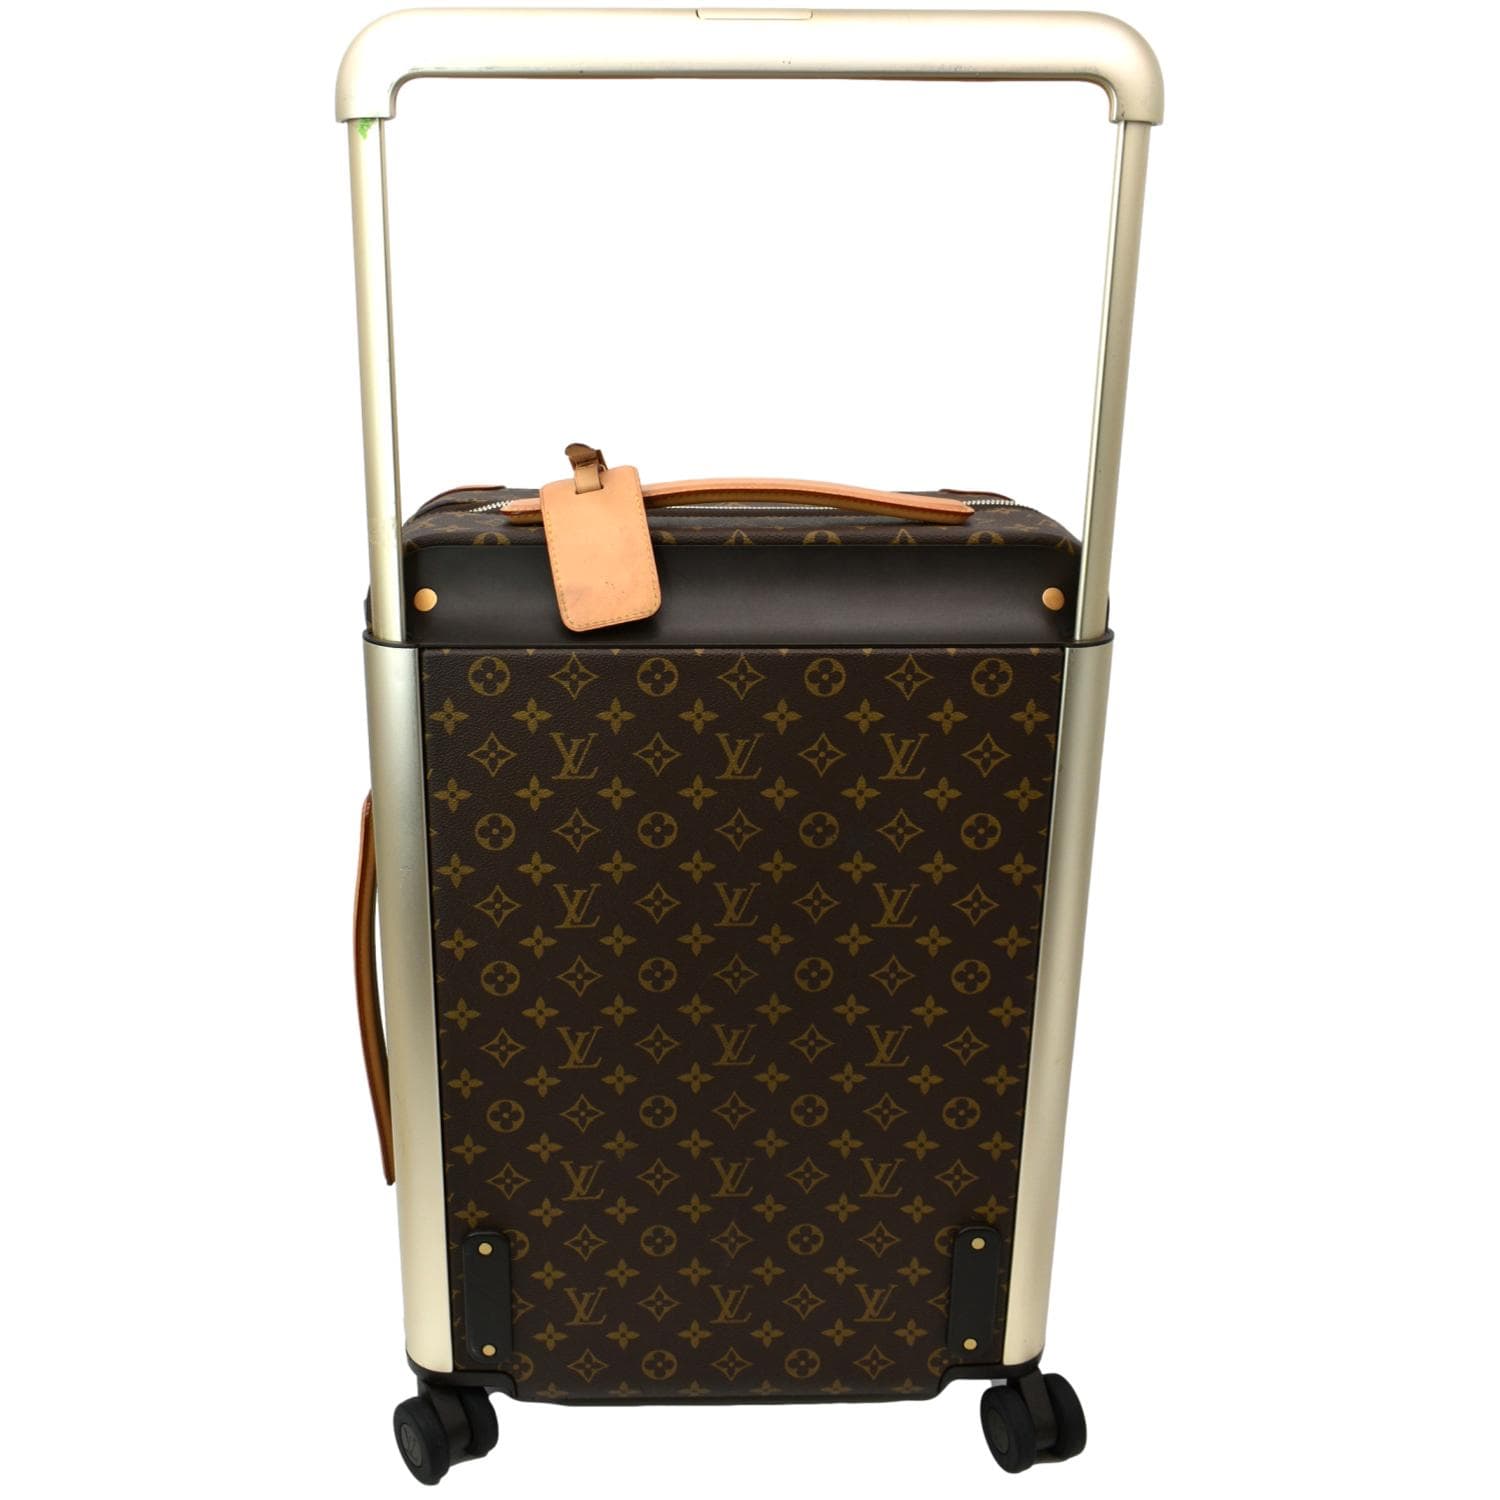 Louis Vuitton Luggage - Horizon 55 Monogram